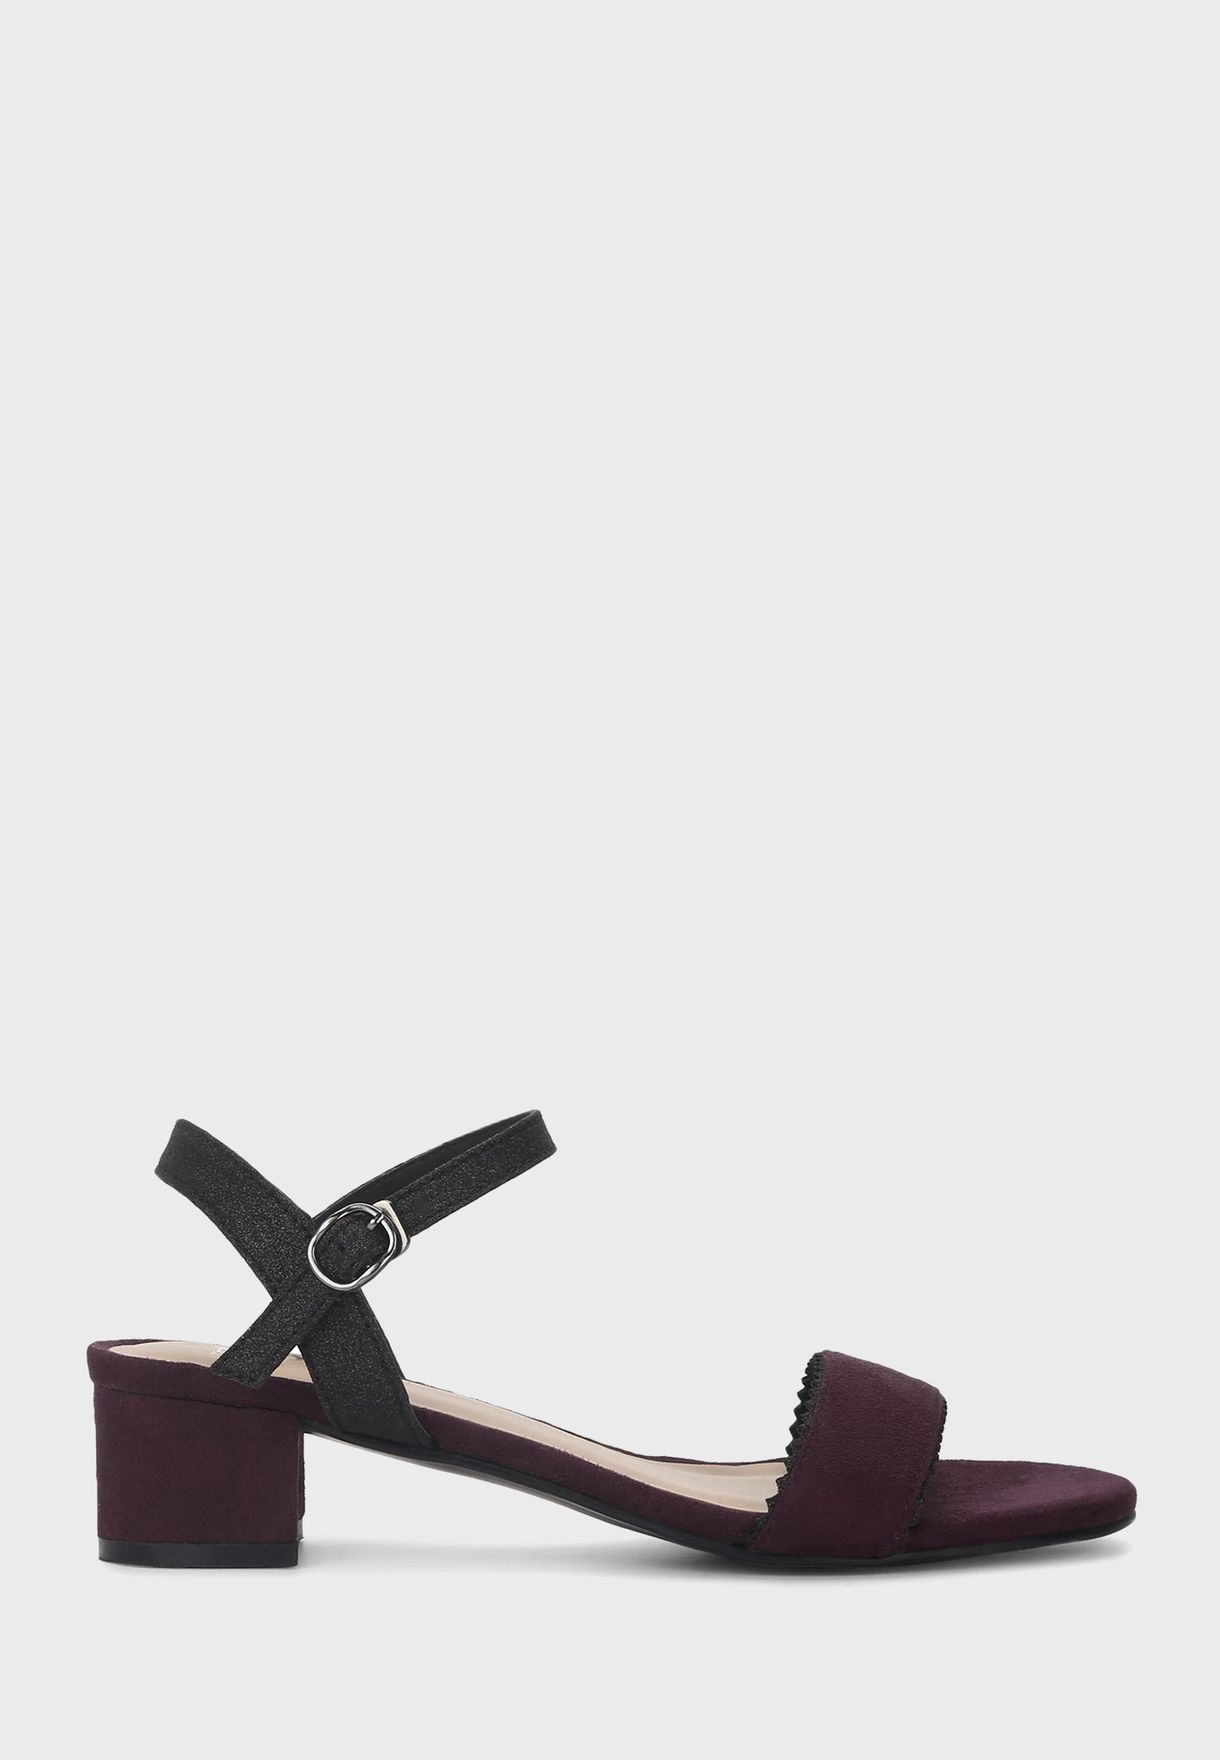 burgundy low heel sandals